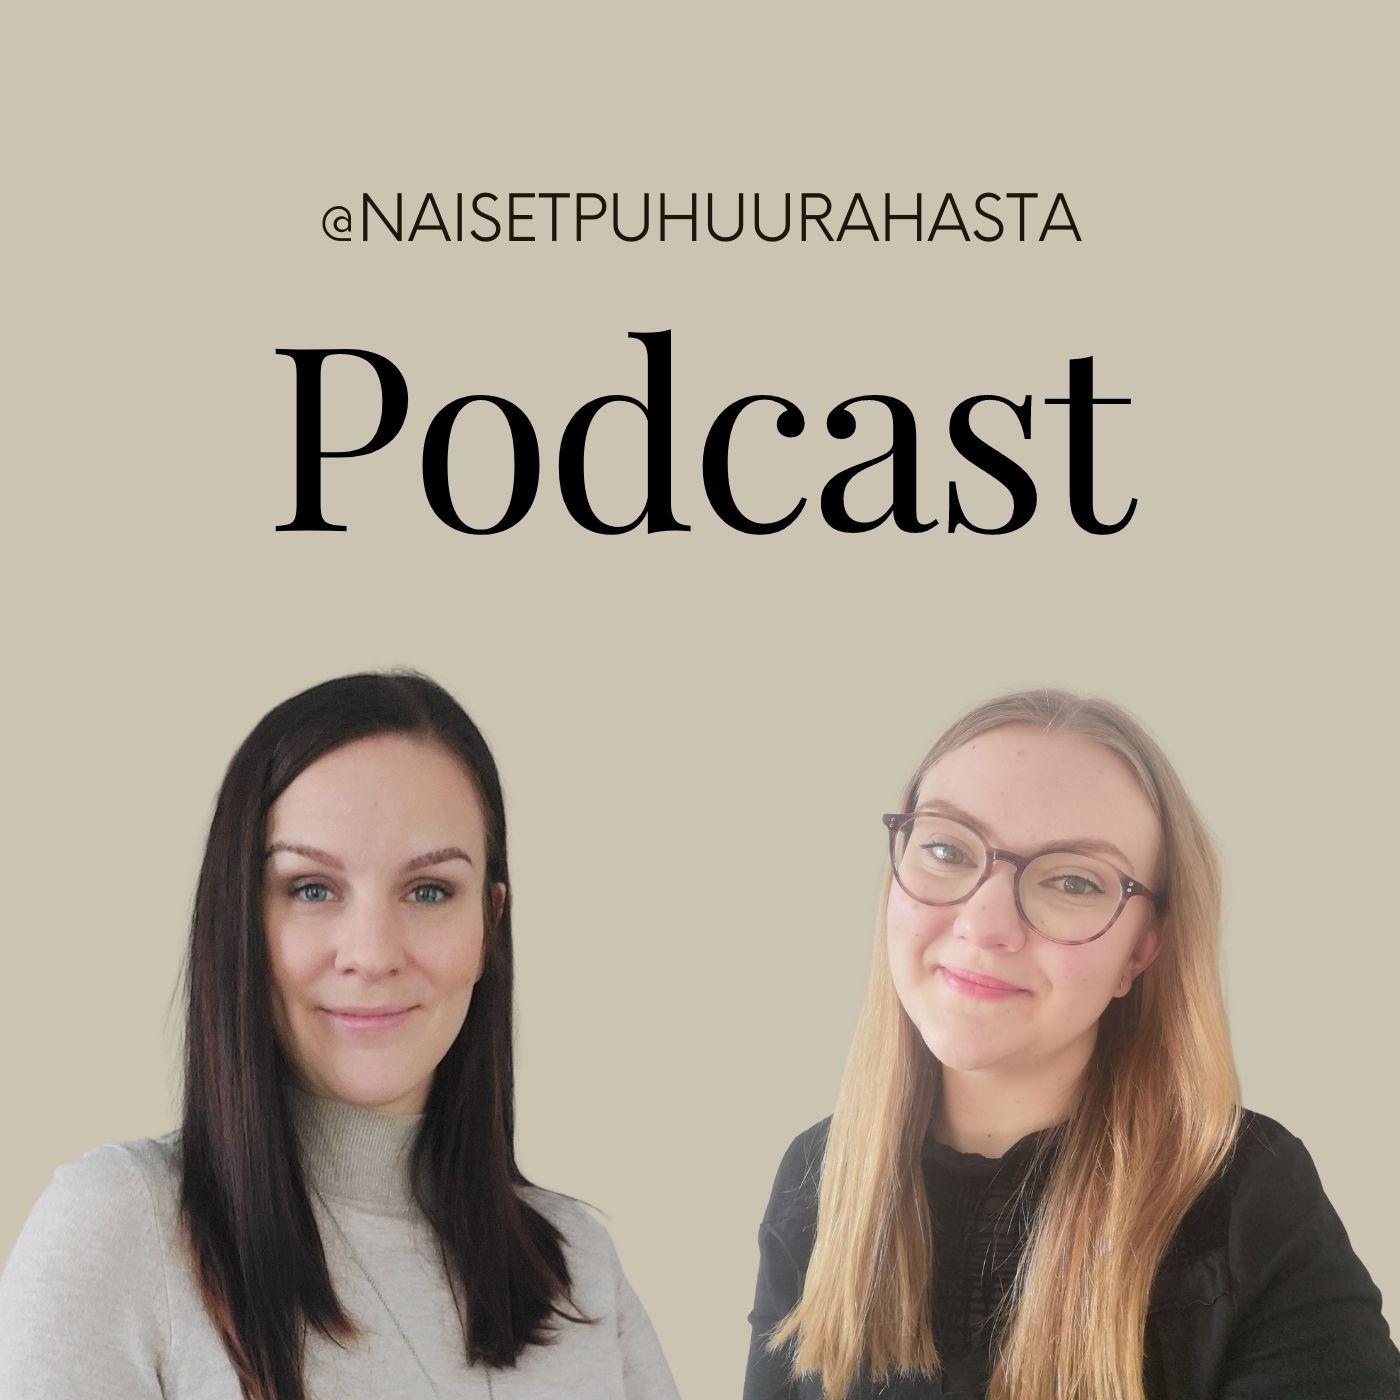 Naiset puhuu rahasta podcast